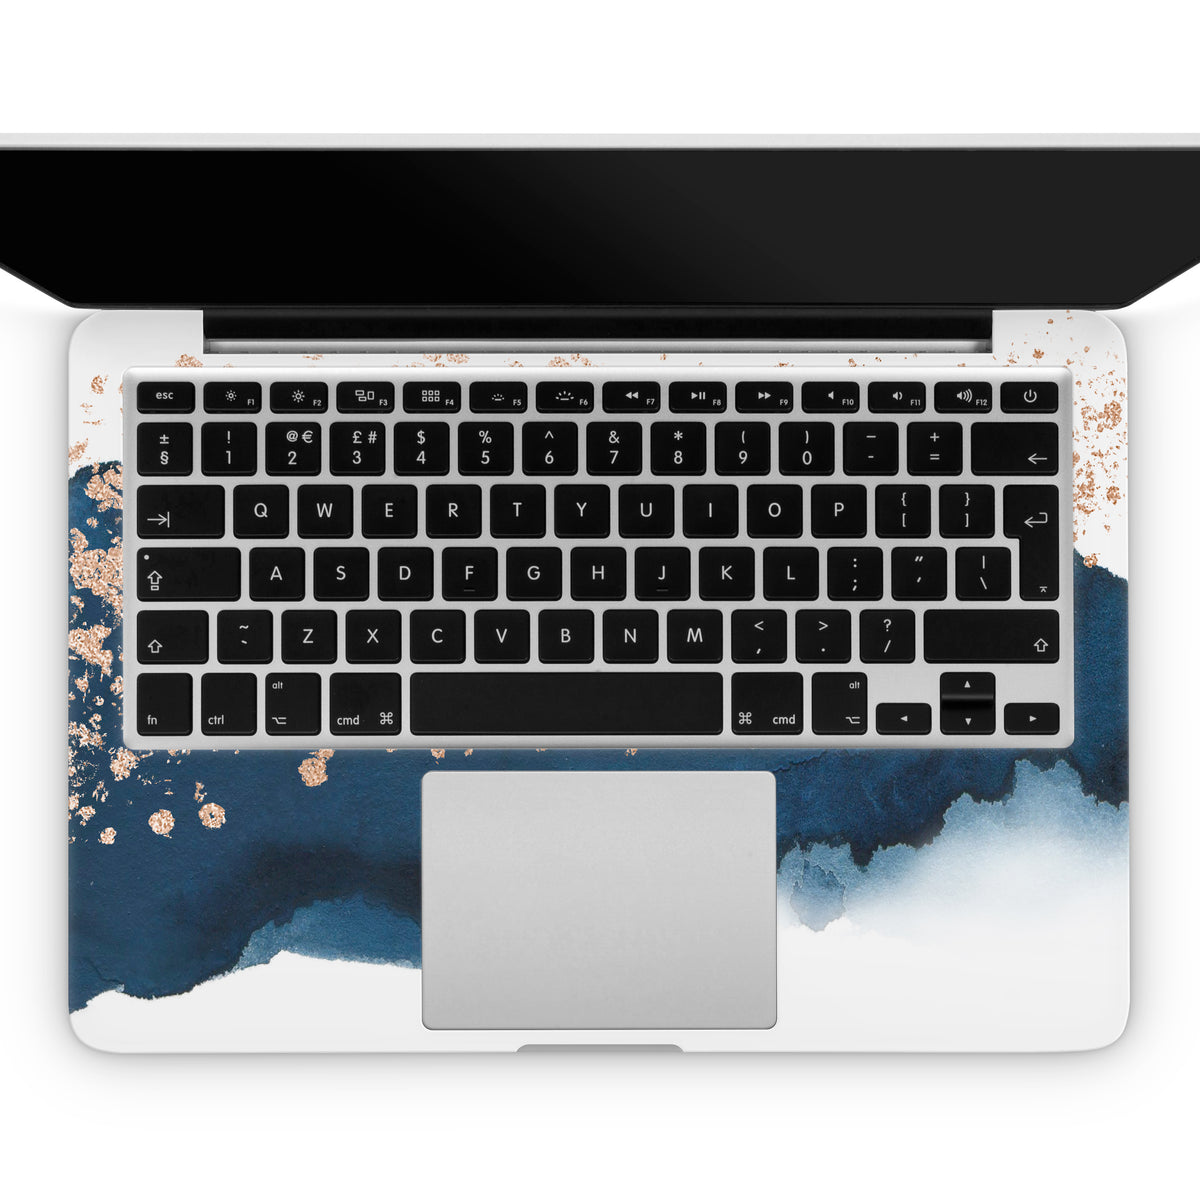 Azure (MacBook Skin)